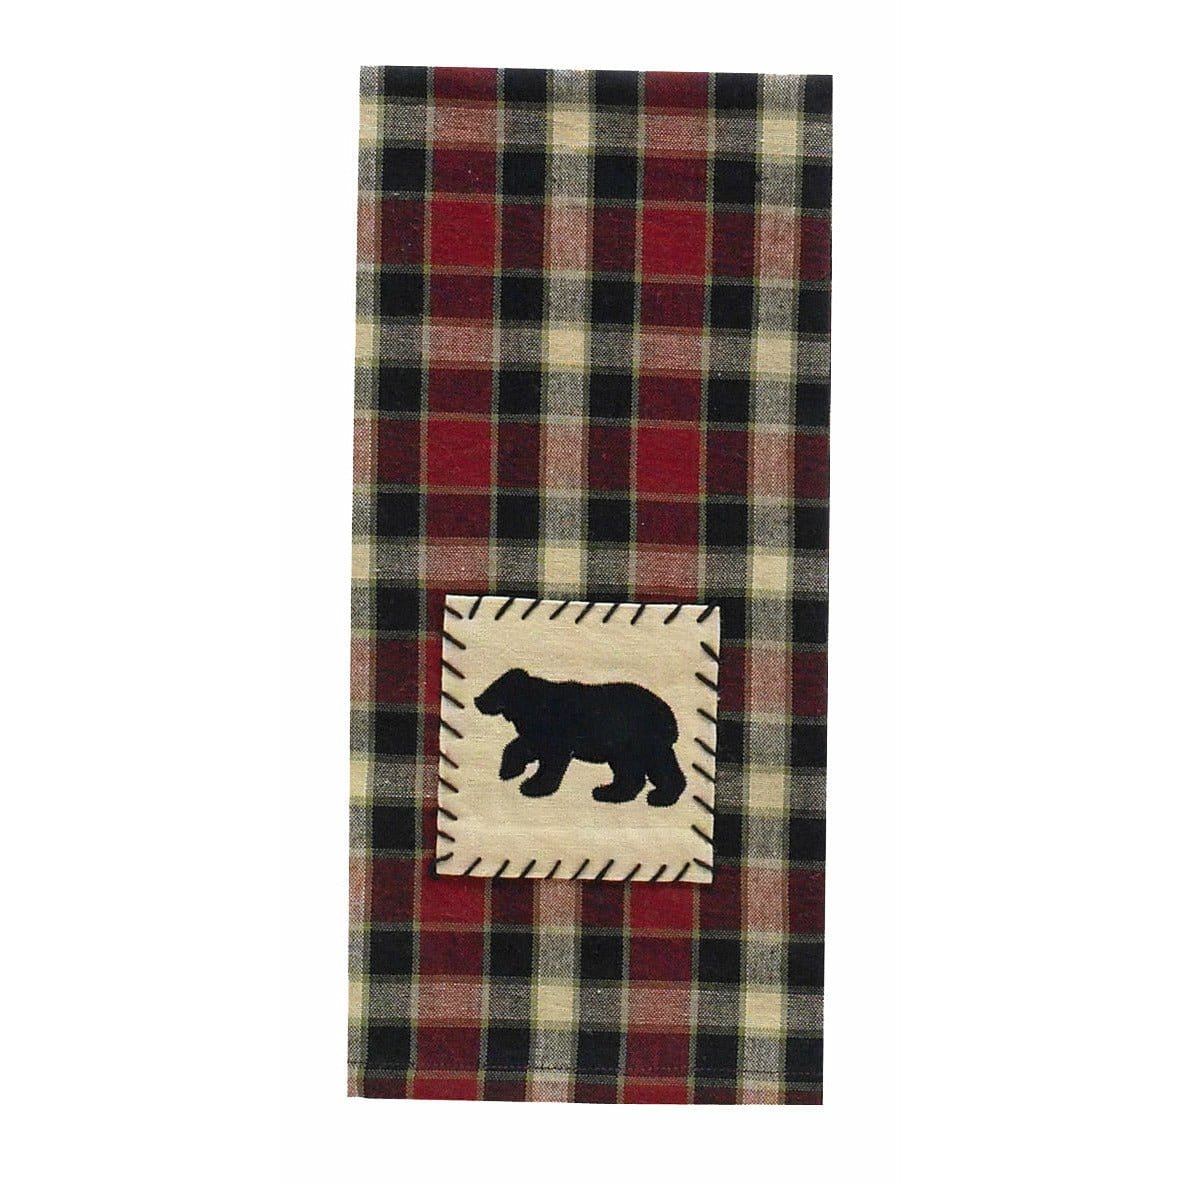 Concord Black Bear Decorative Towel-Park Designs-The Village Merchant